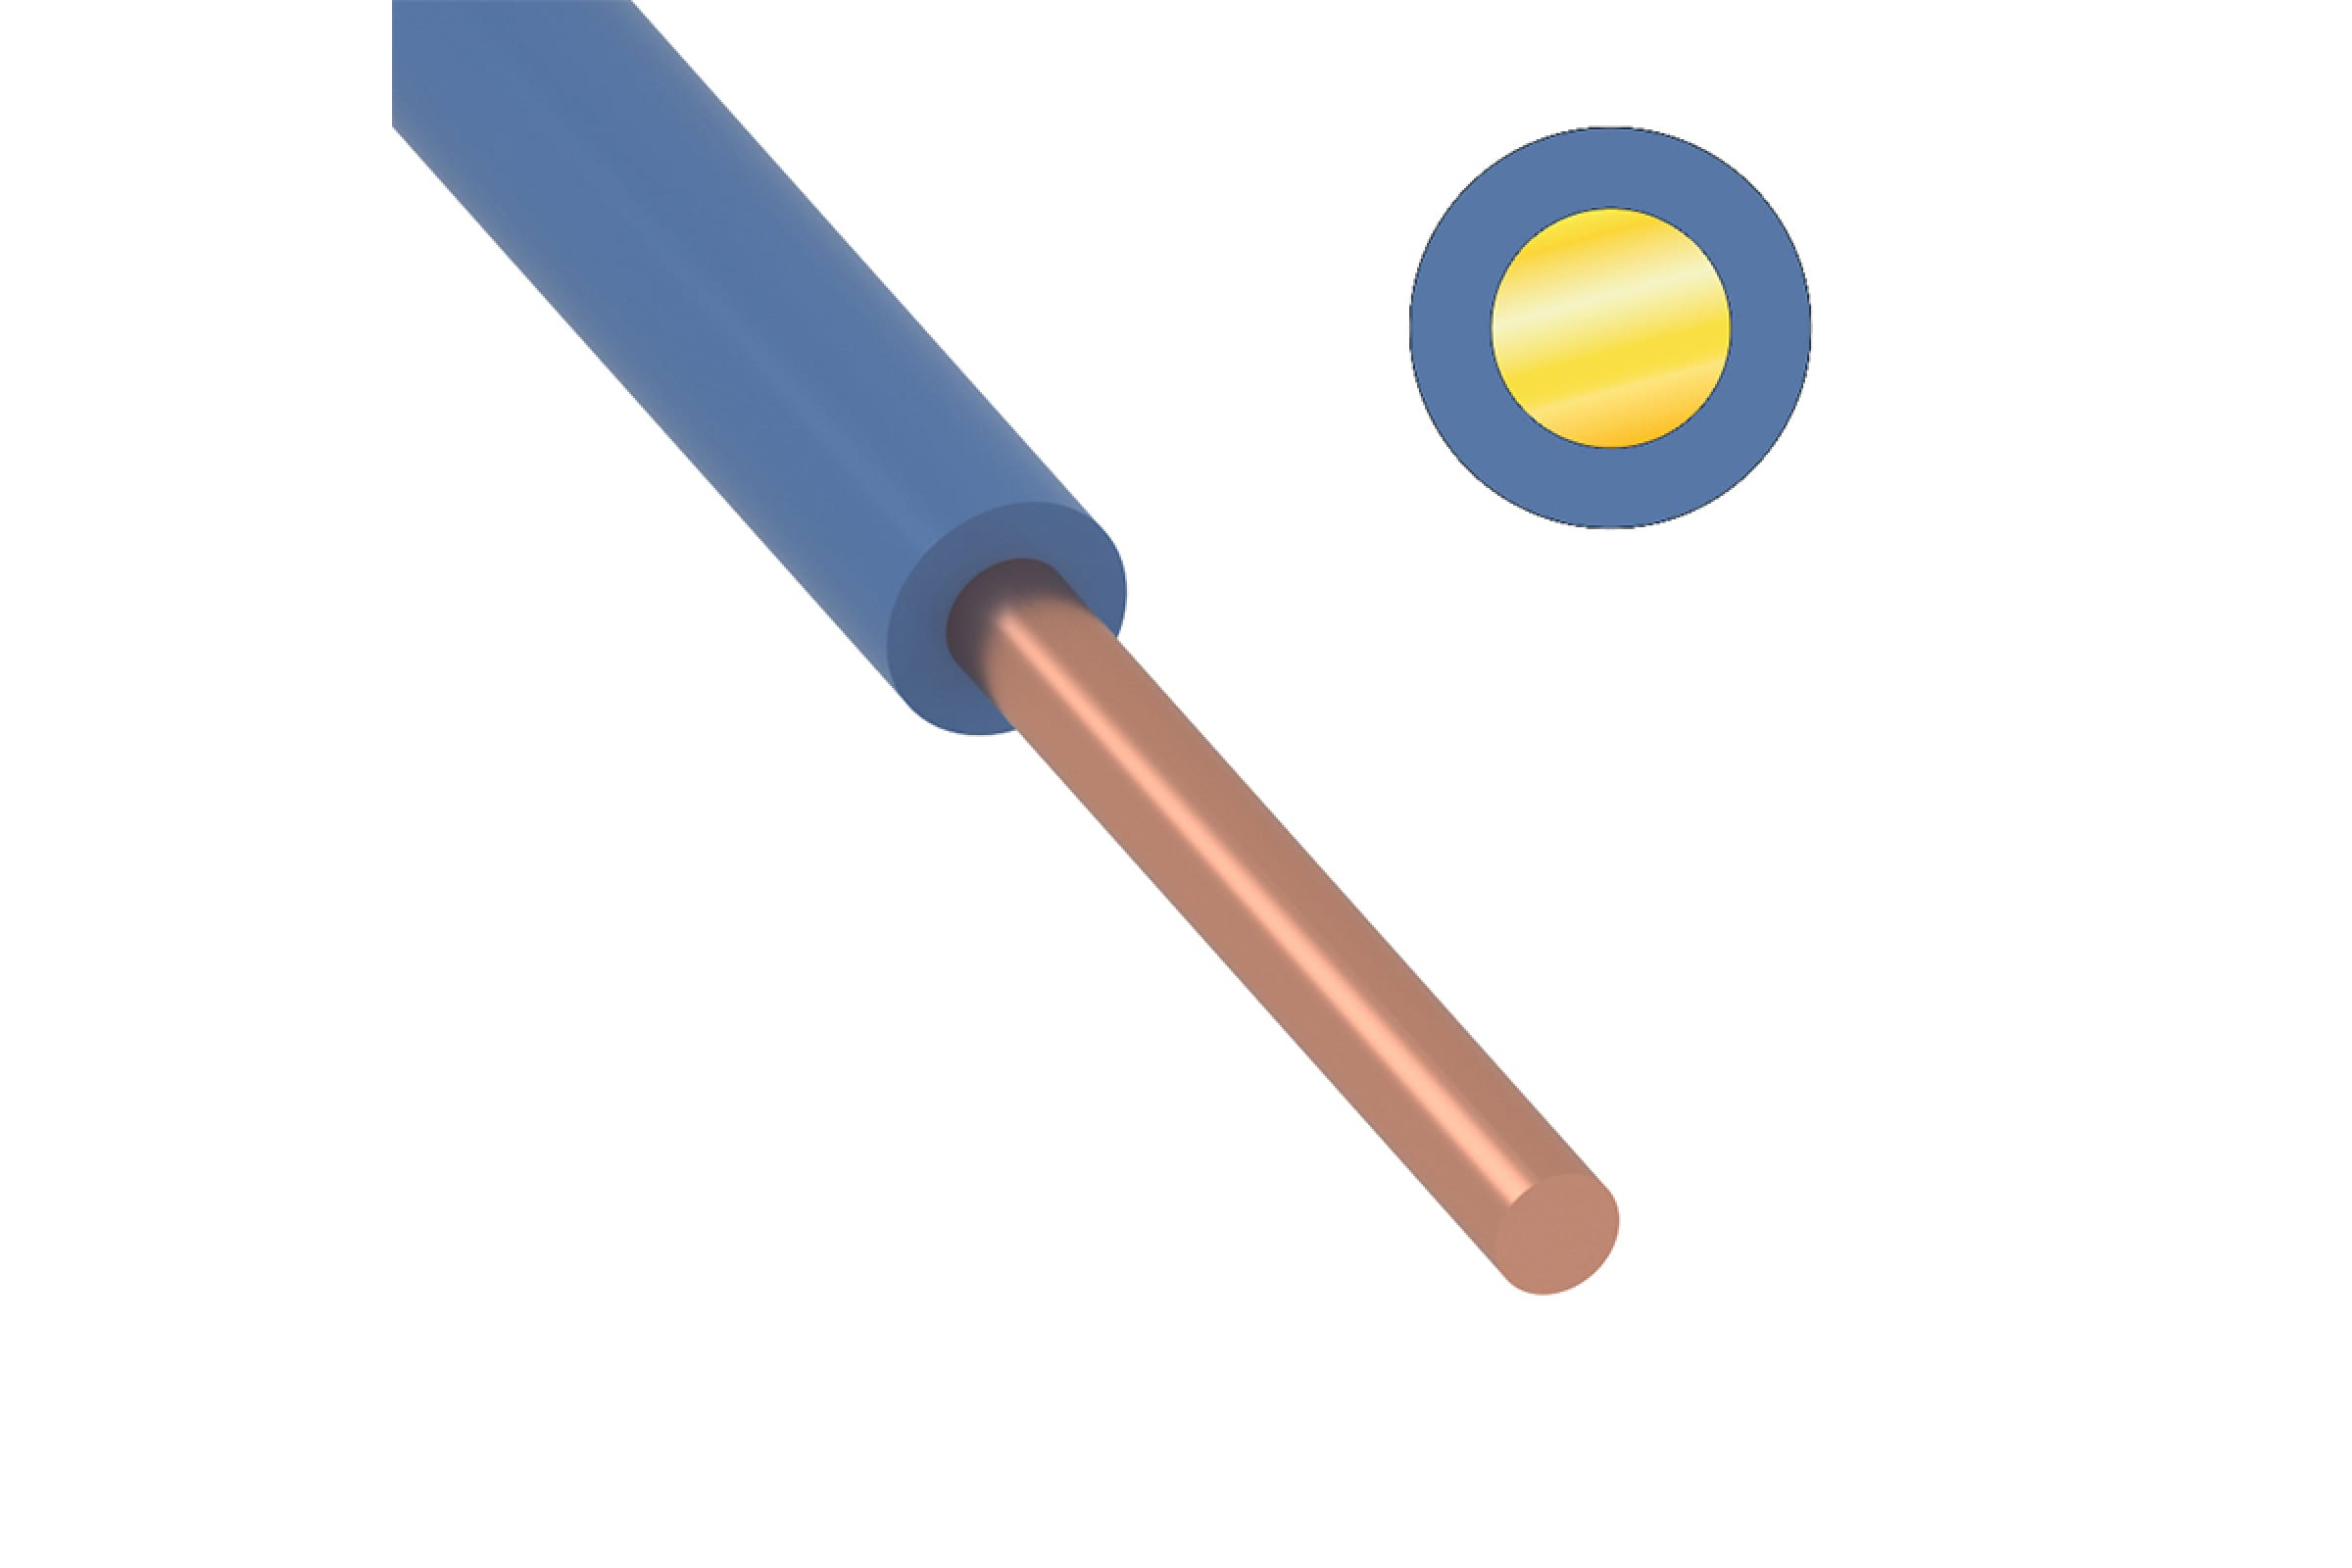 Провод ПуВ (ПВ-1) 1х16,0 ГОСТ (100м), синий TDM